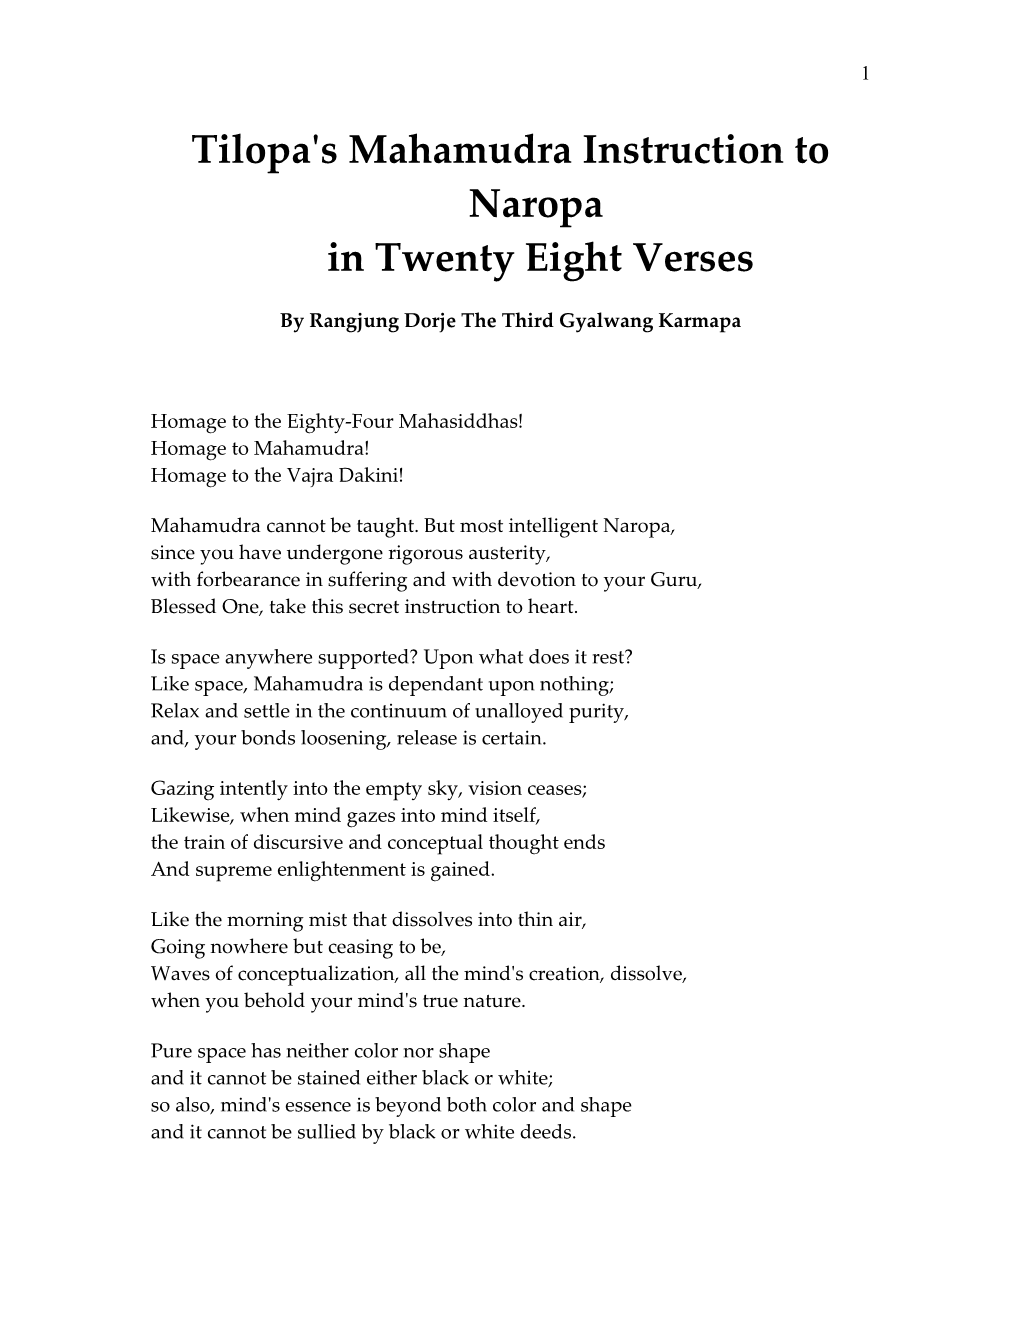 Tilopa's Mahamudra Instruction to Naropa